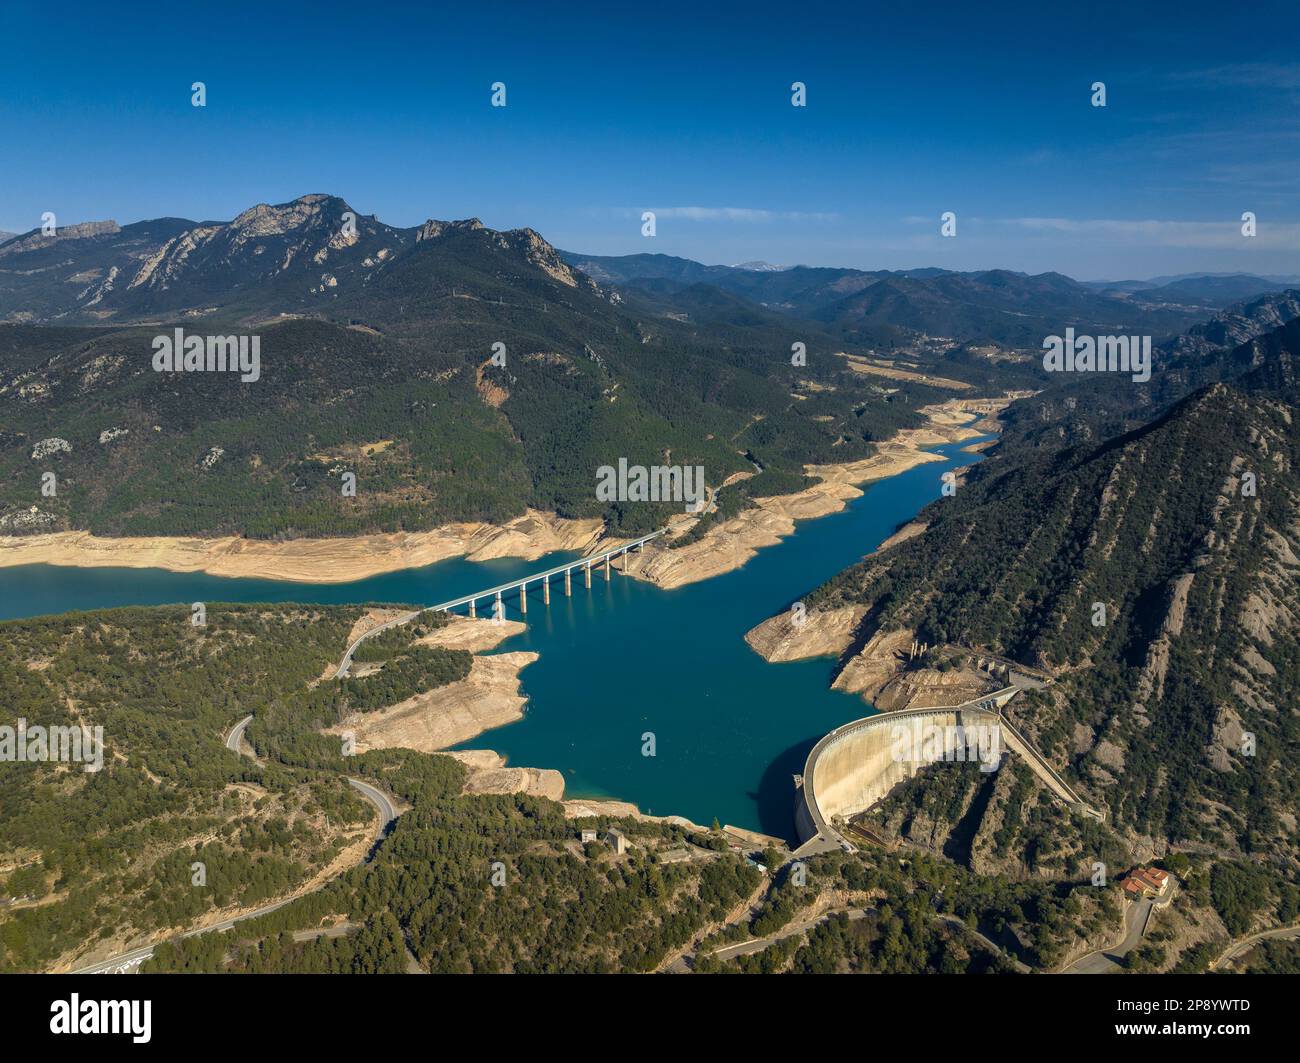 Luftaufnahme des Baells-Reservoirs mit sehr niedrigem Wasserstand während der Dürre 2022-23 (Berguedà, Barcelona, Katalonien, Spanien) Stockfoto